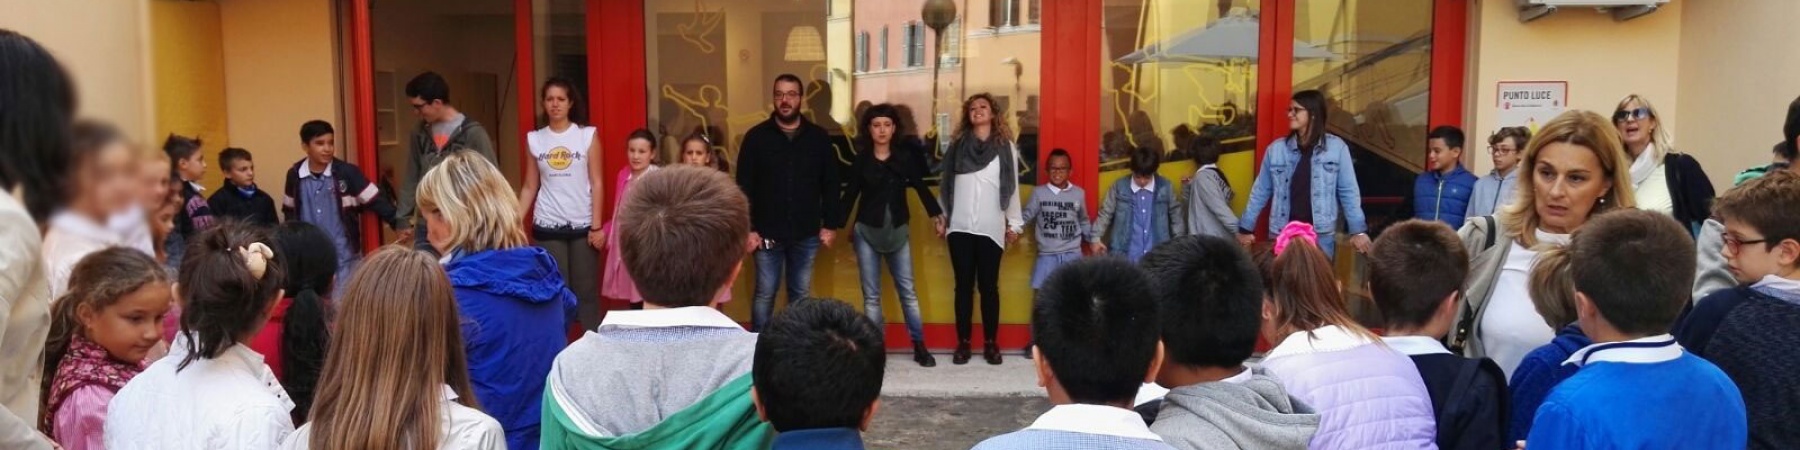 Gruppo di ragazzi e ragazze davanti al Punto Luce di Ancona